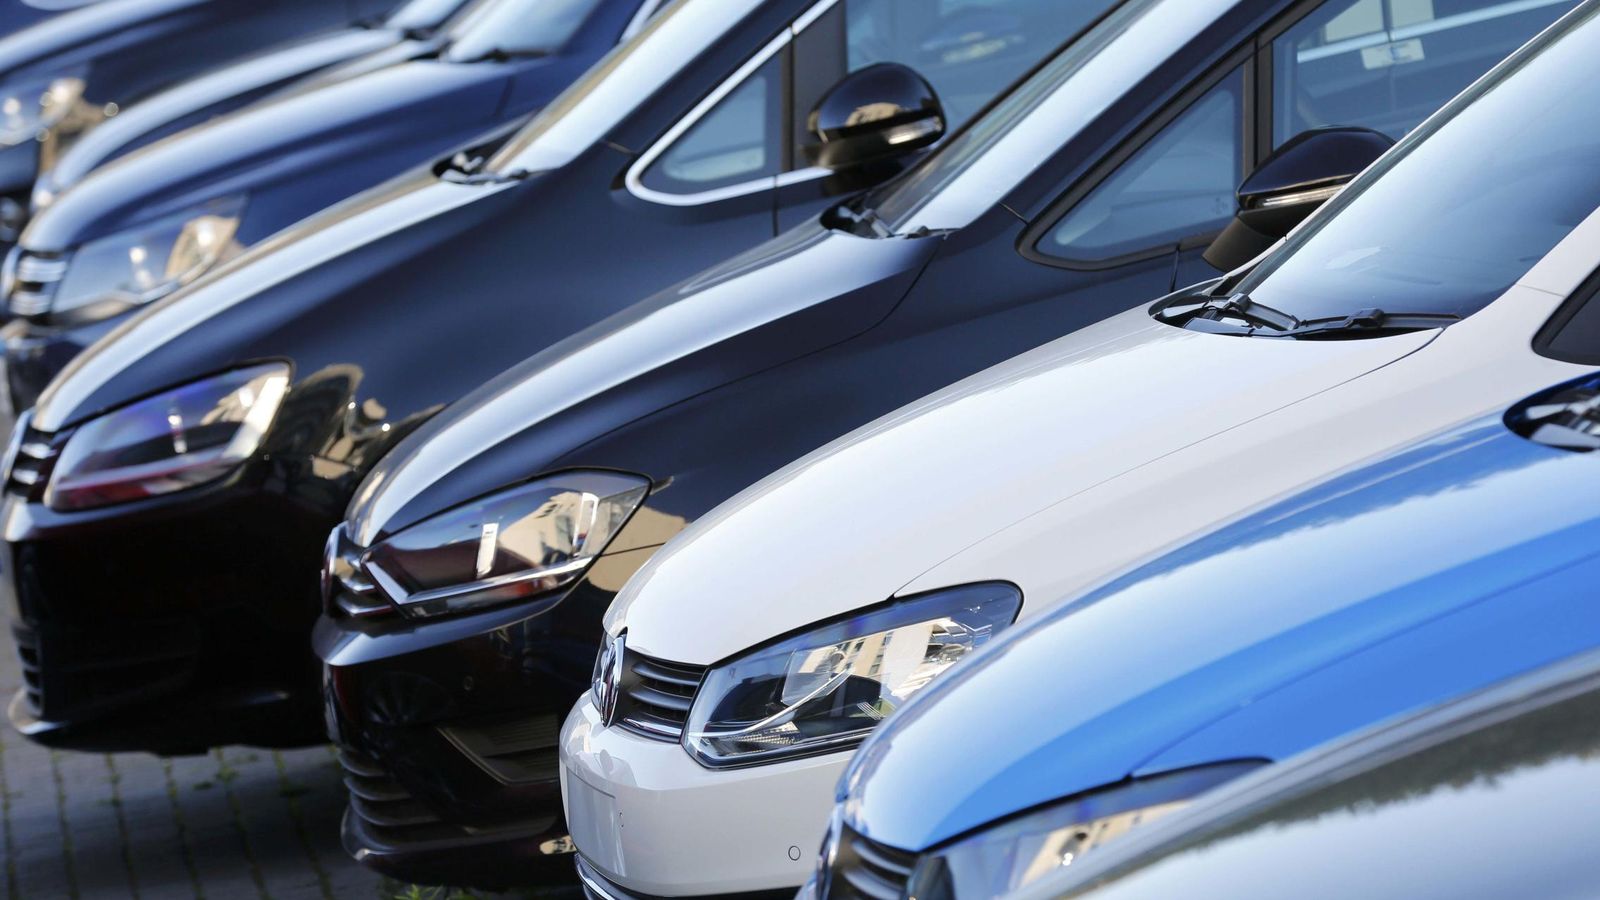 Foto: Varios coches de la marca Volkswagen listos para su transporte. (Reuters)